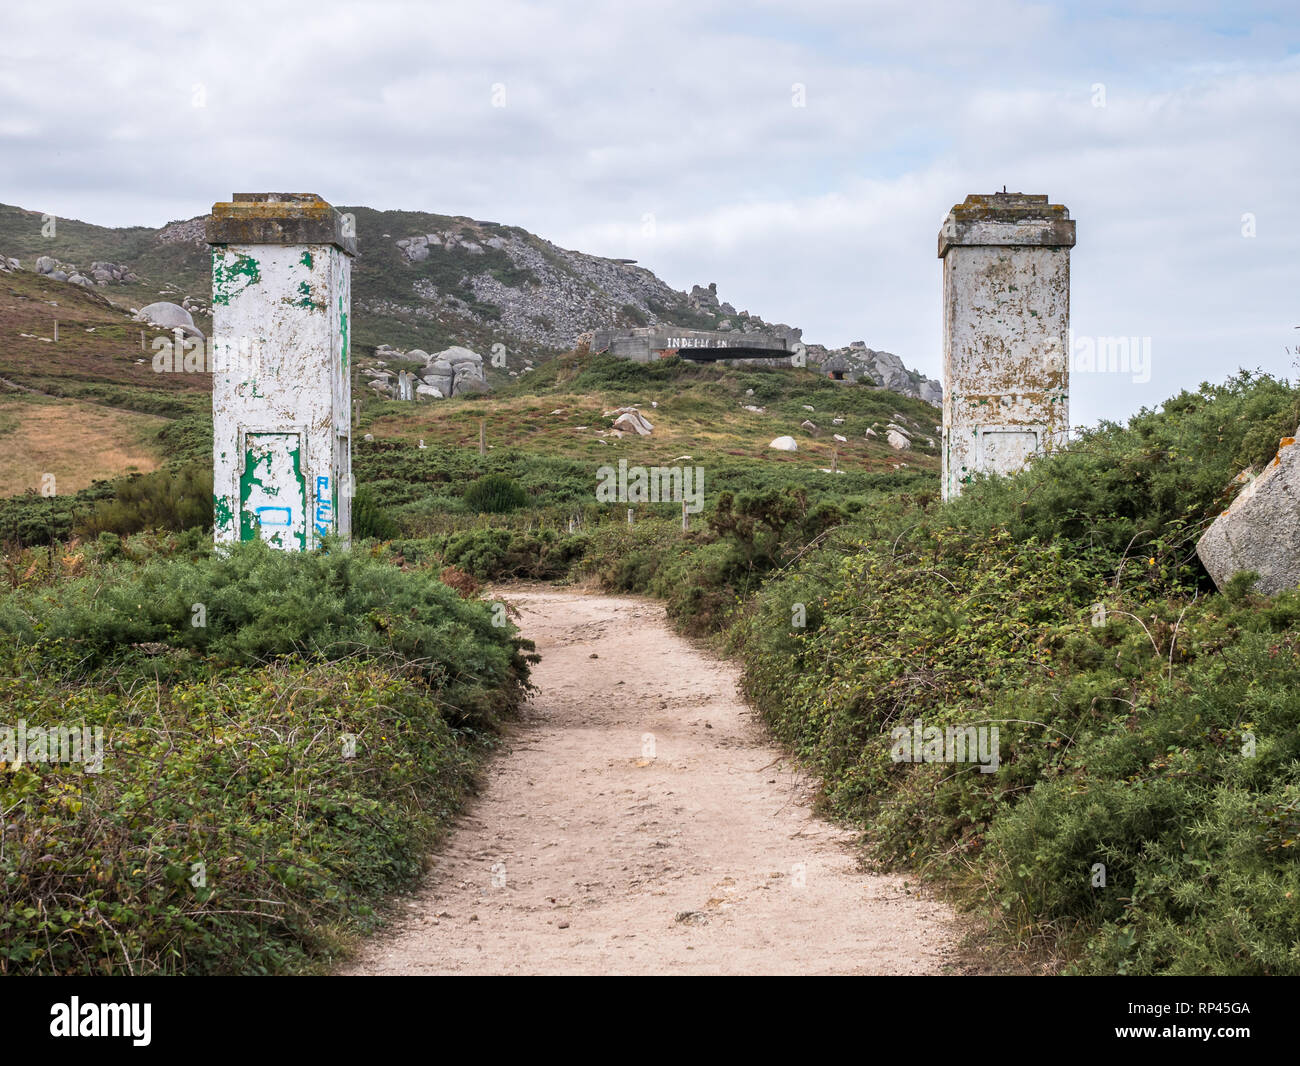 Ruines d'une batterie de défense abandonnés l'armée espagnole au cap avant, côte Atlantique, Ferrol, La Corogne, Espagne Banque D'Images